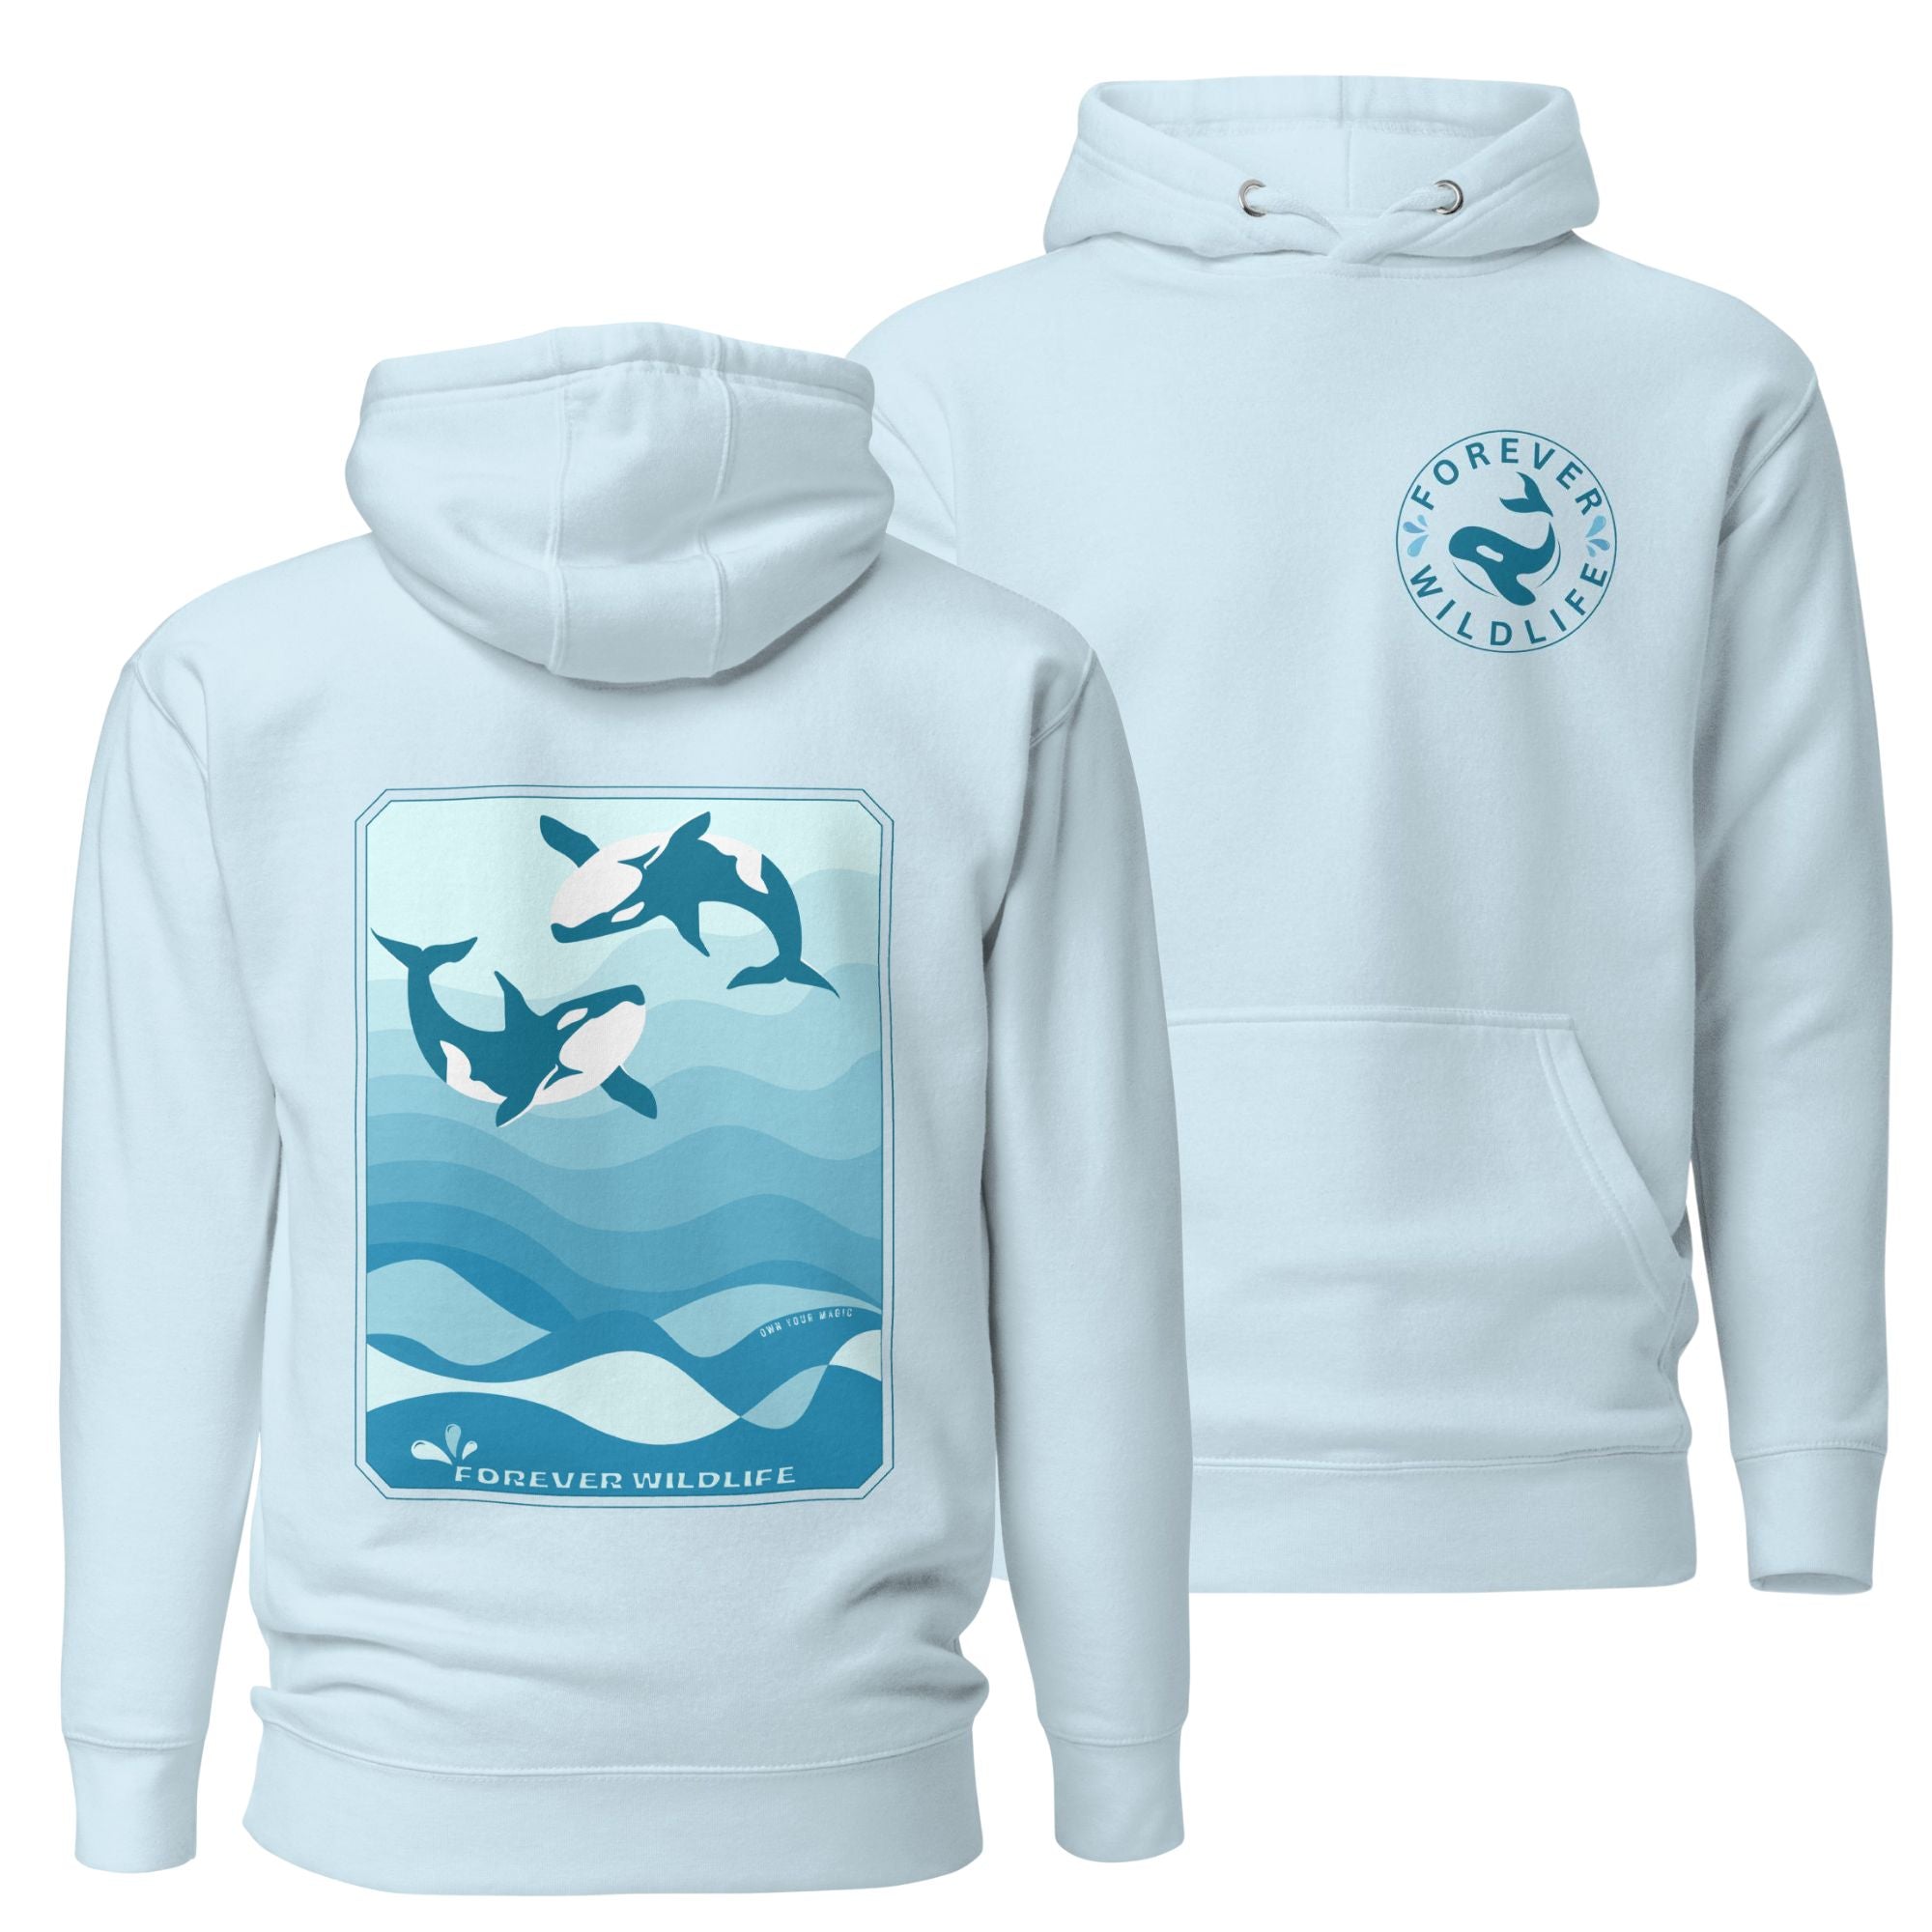 Orca Hoodie, beautiful sky blue Orca hoodie with Killer Whales on the hoodie by Forever Wildlife selling Wildlife hoodies.